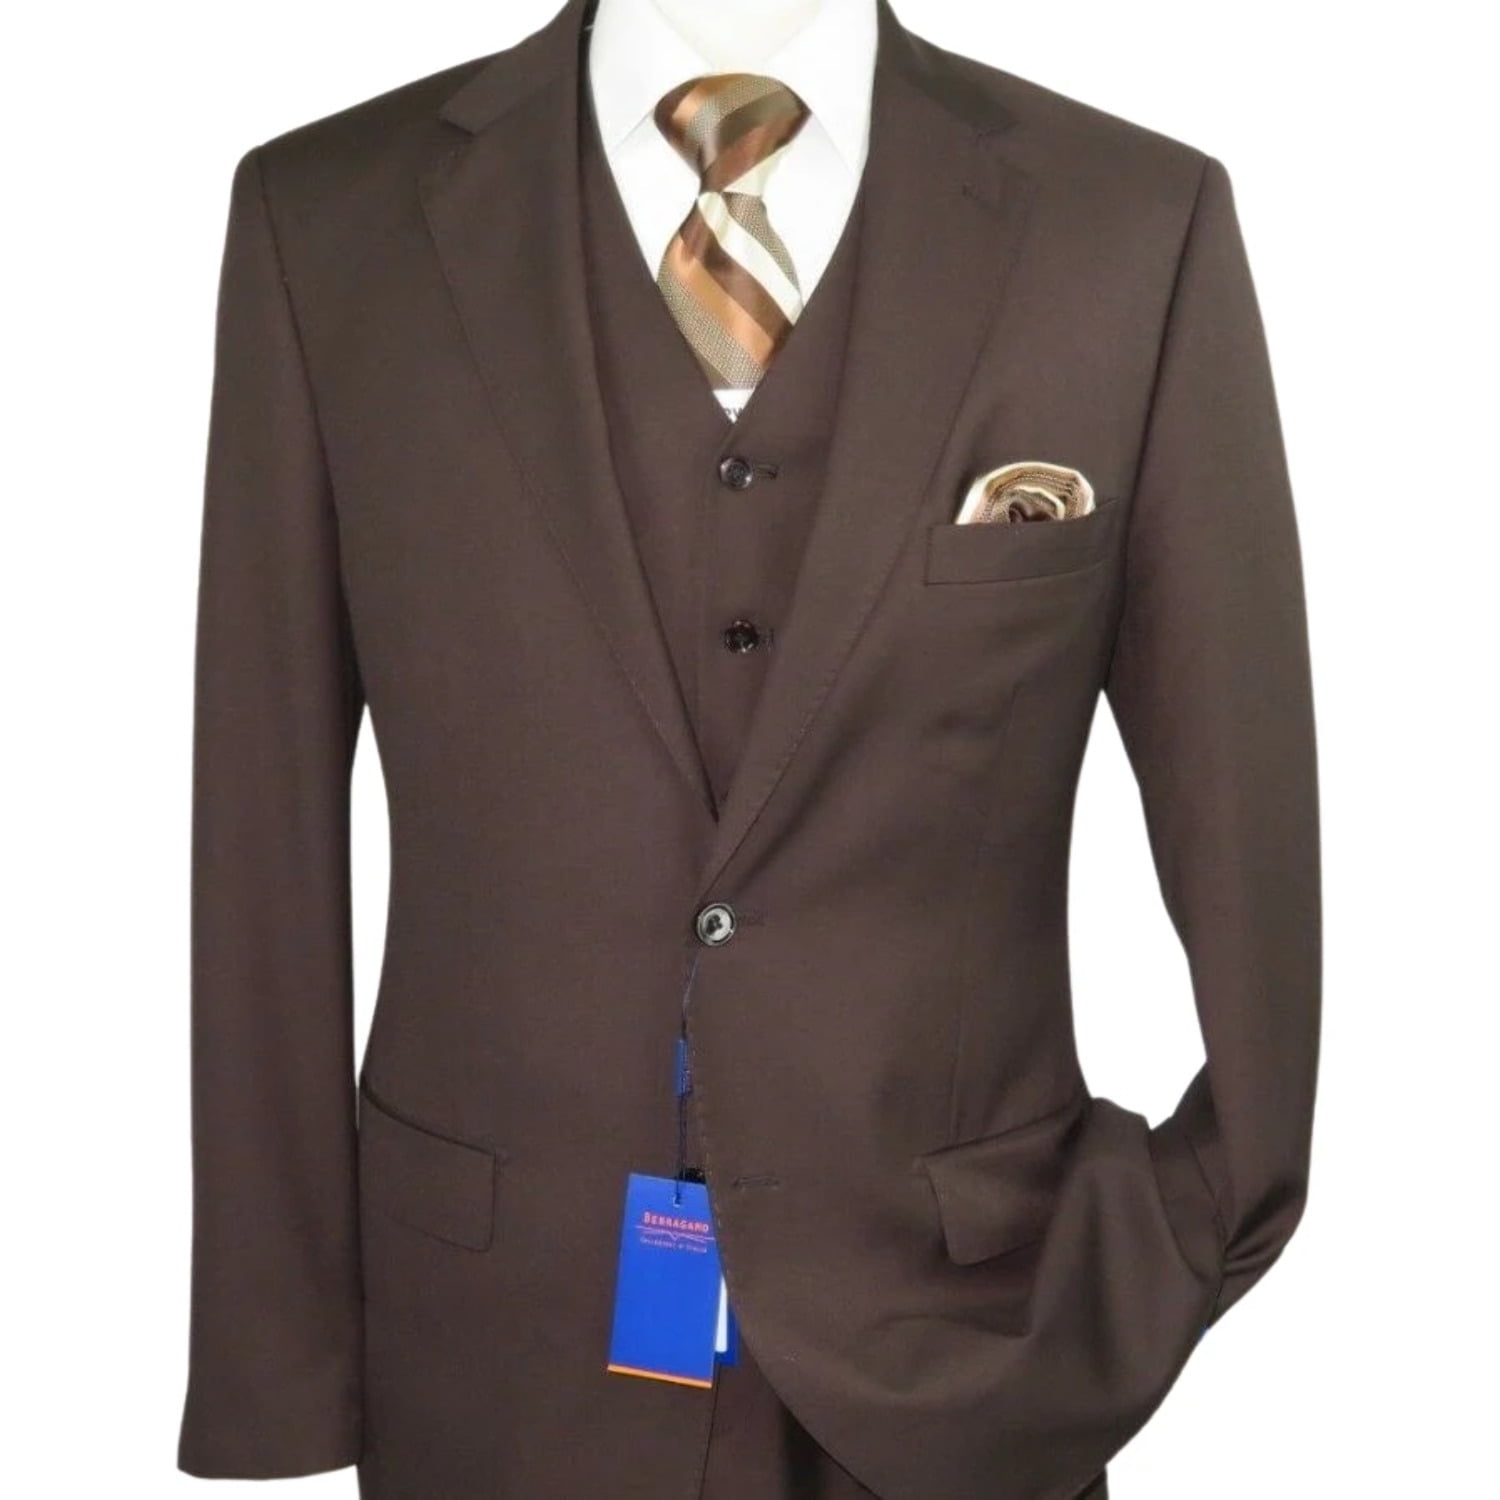 Men BERRAGAMO 3pc Suit Vested Plain front Pants Side Vents Formal A6732 Burgundy 